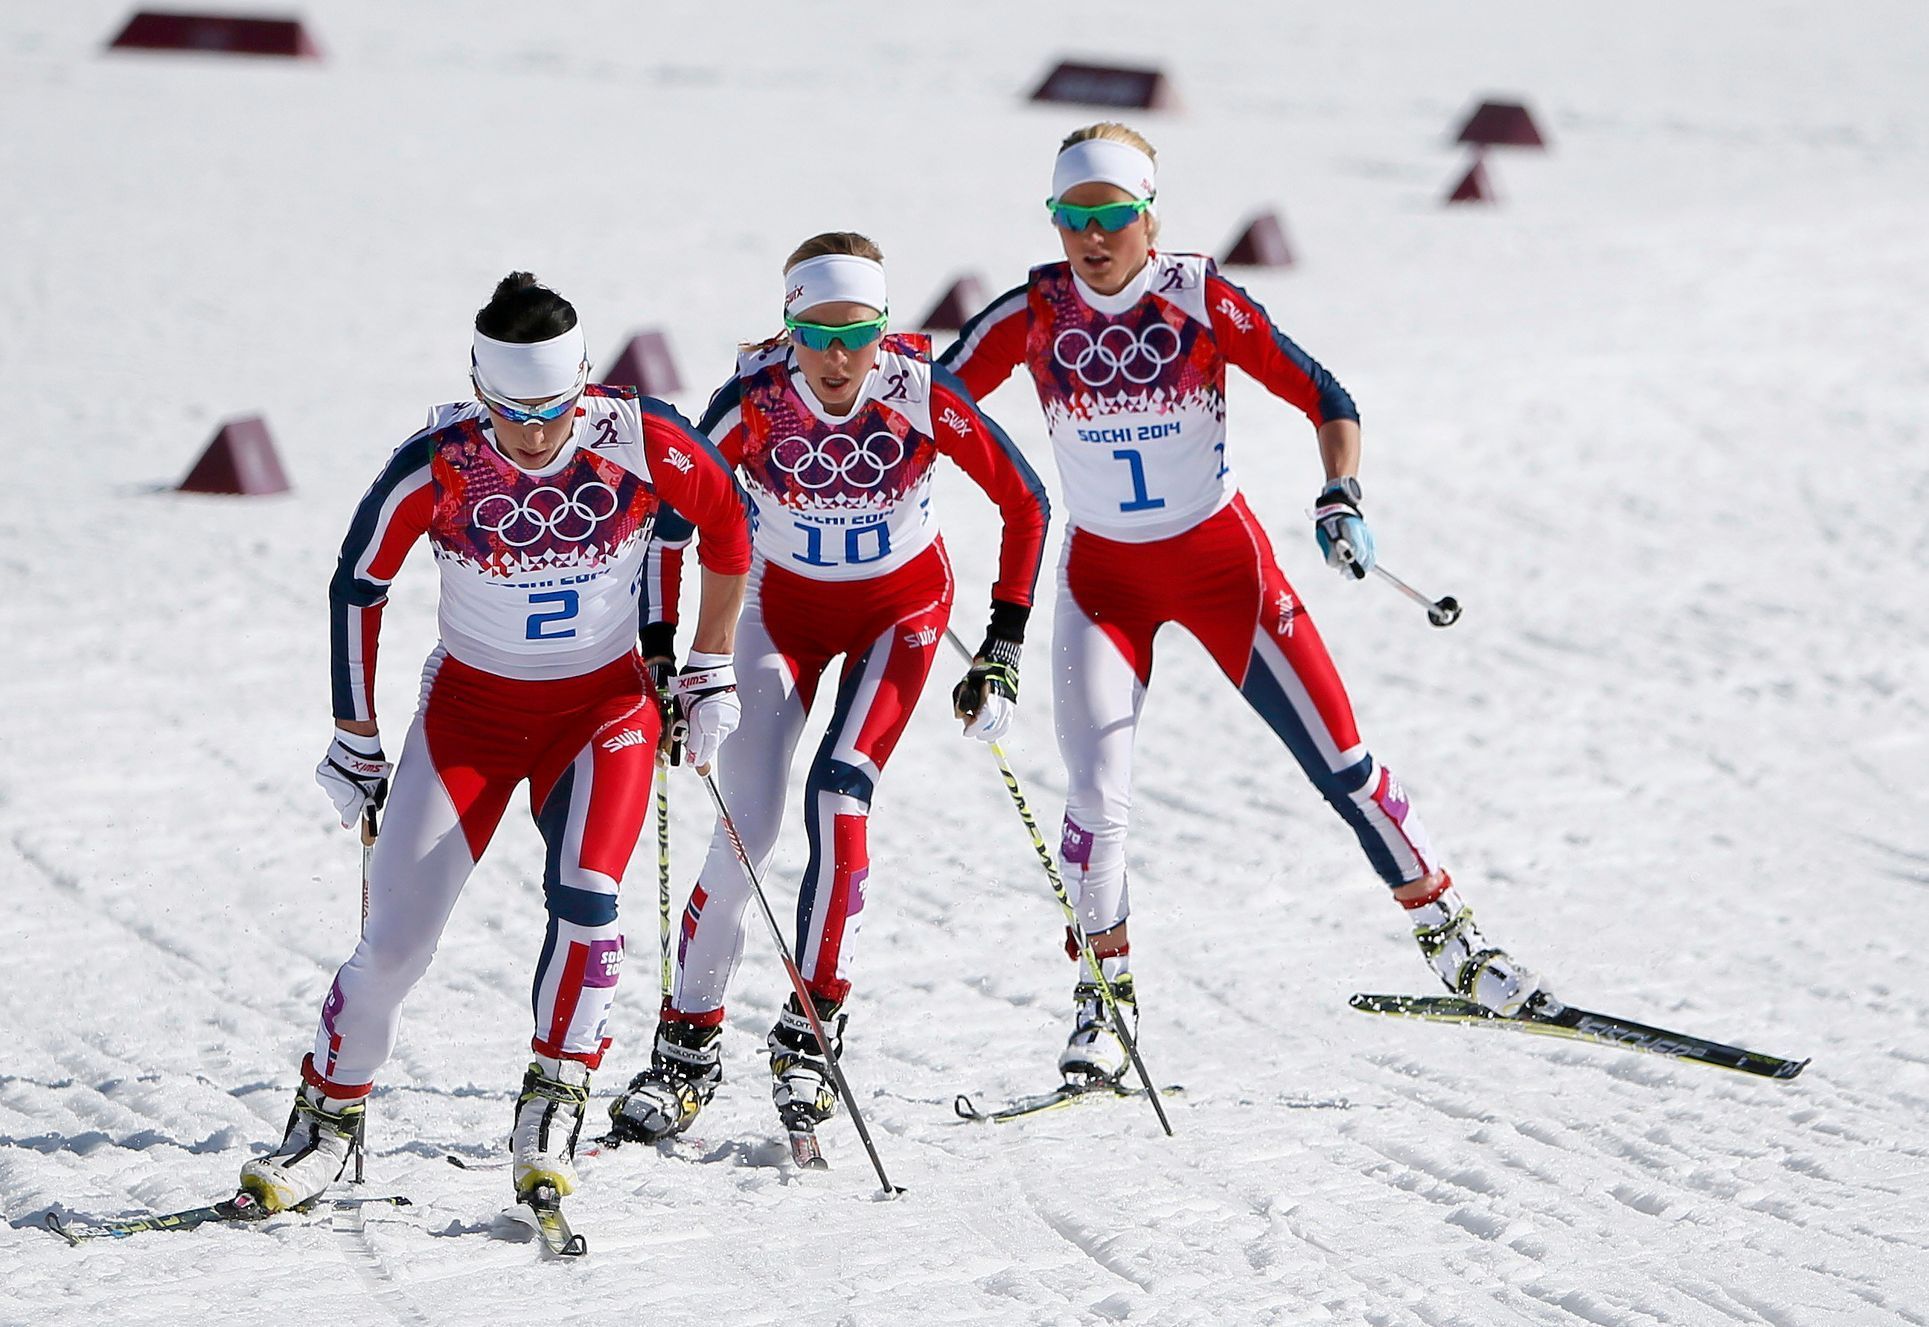 Soči 2014, 30 km Ž: Marit Björgenová (2), Kristin Störmerová-Steiraová (10) a Therese Johaugová